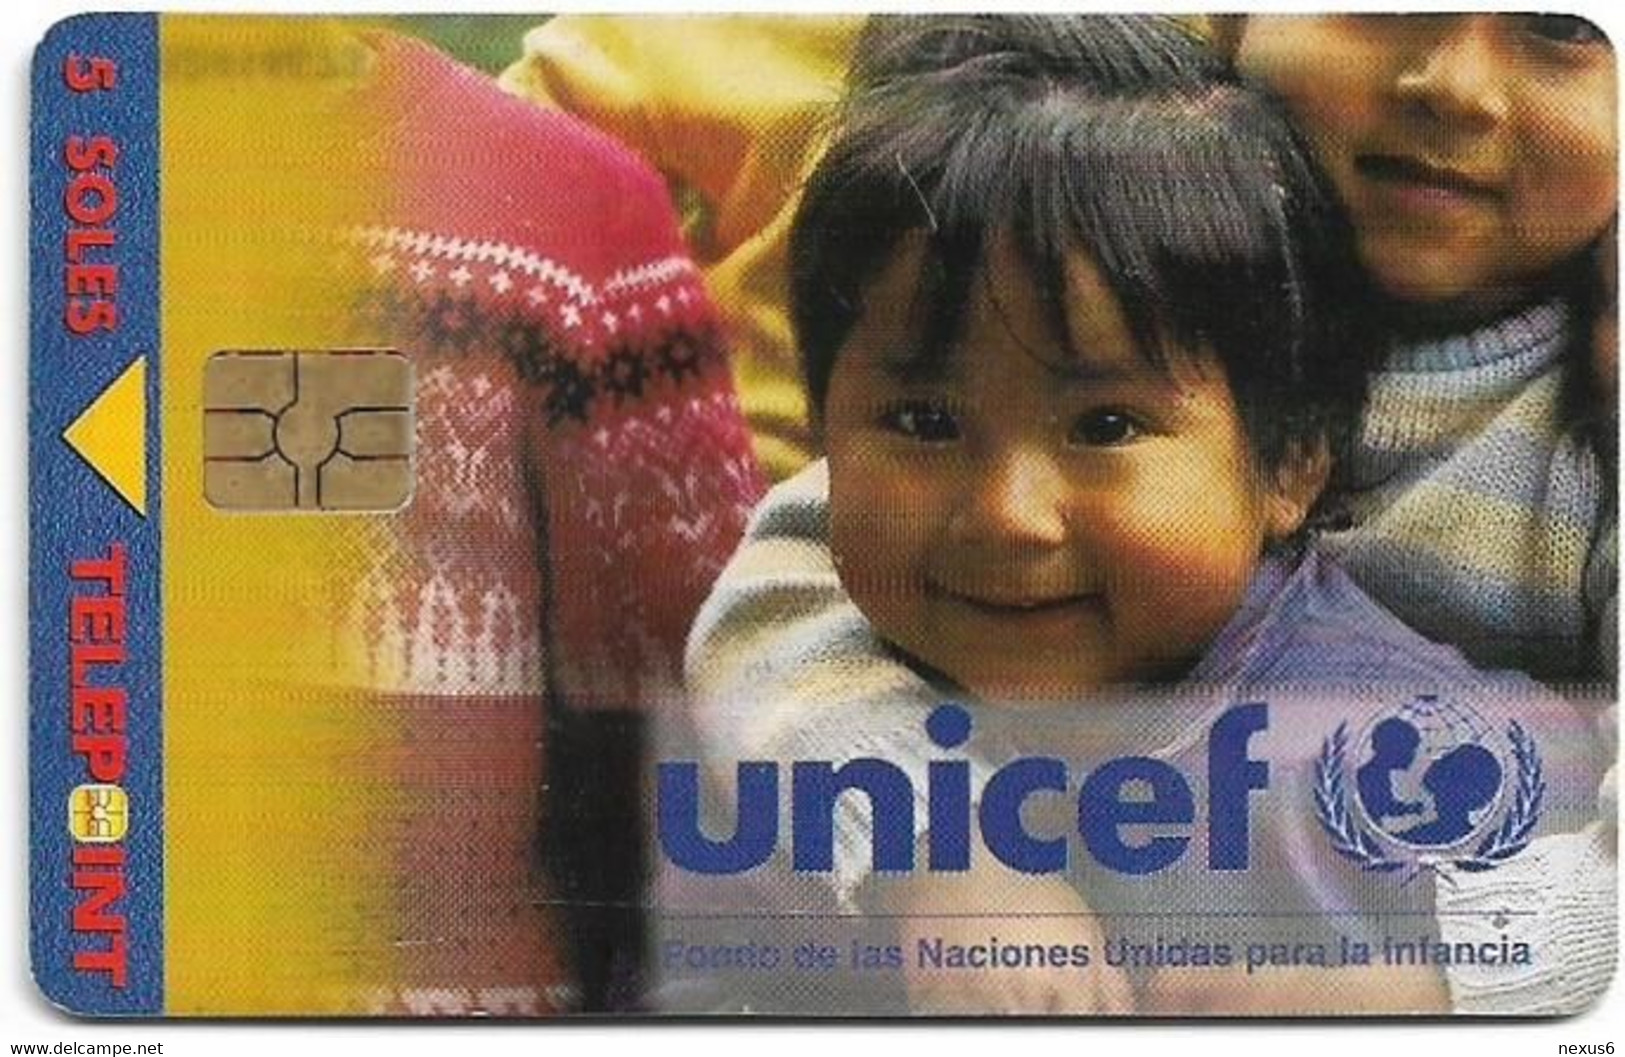 Peru - Telepoint - Unicef 1. Girls Arm In Arm, 09.1998, 5Sol, 50.000ex, Used - Perú